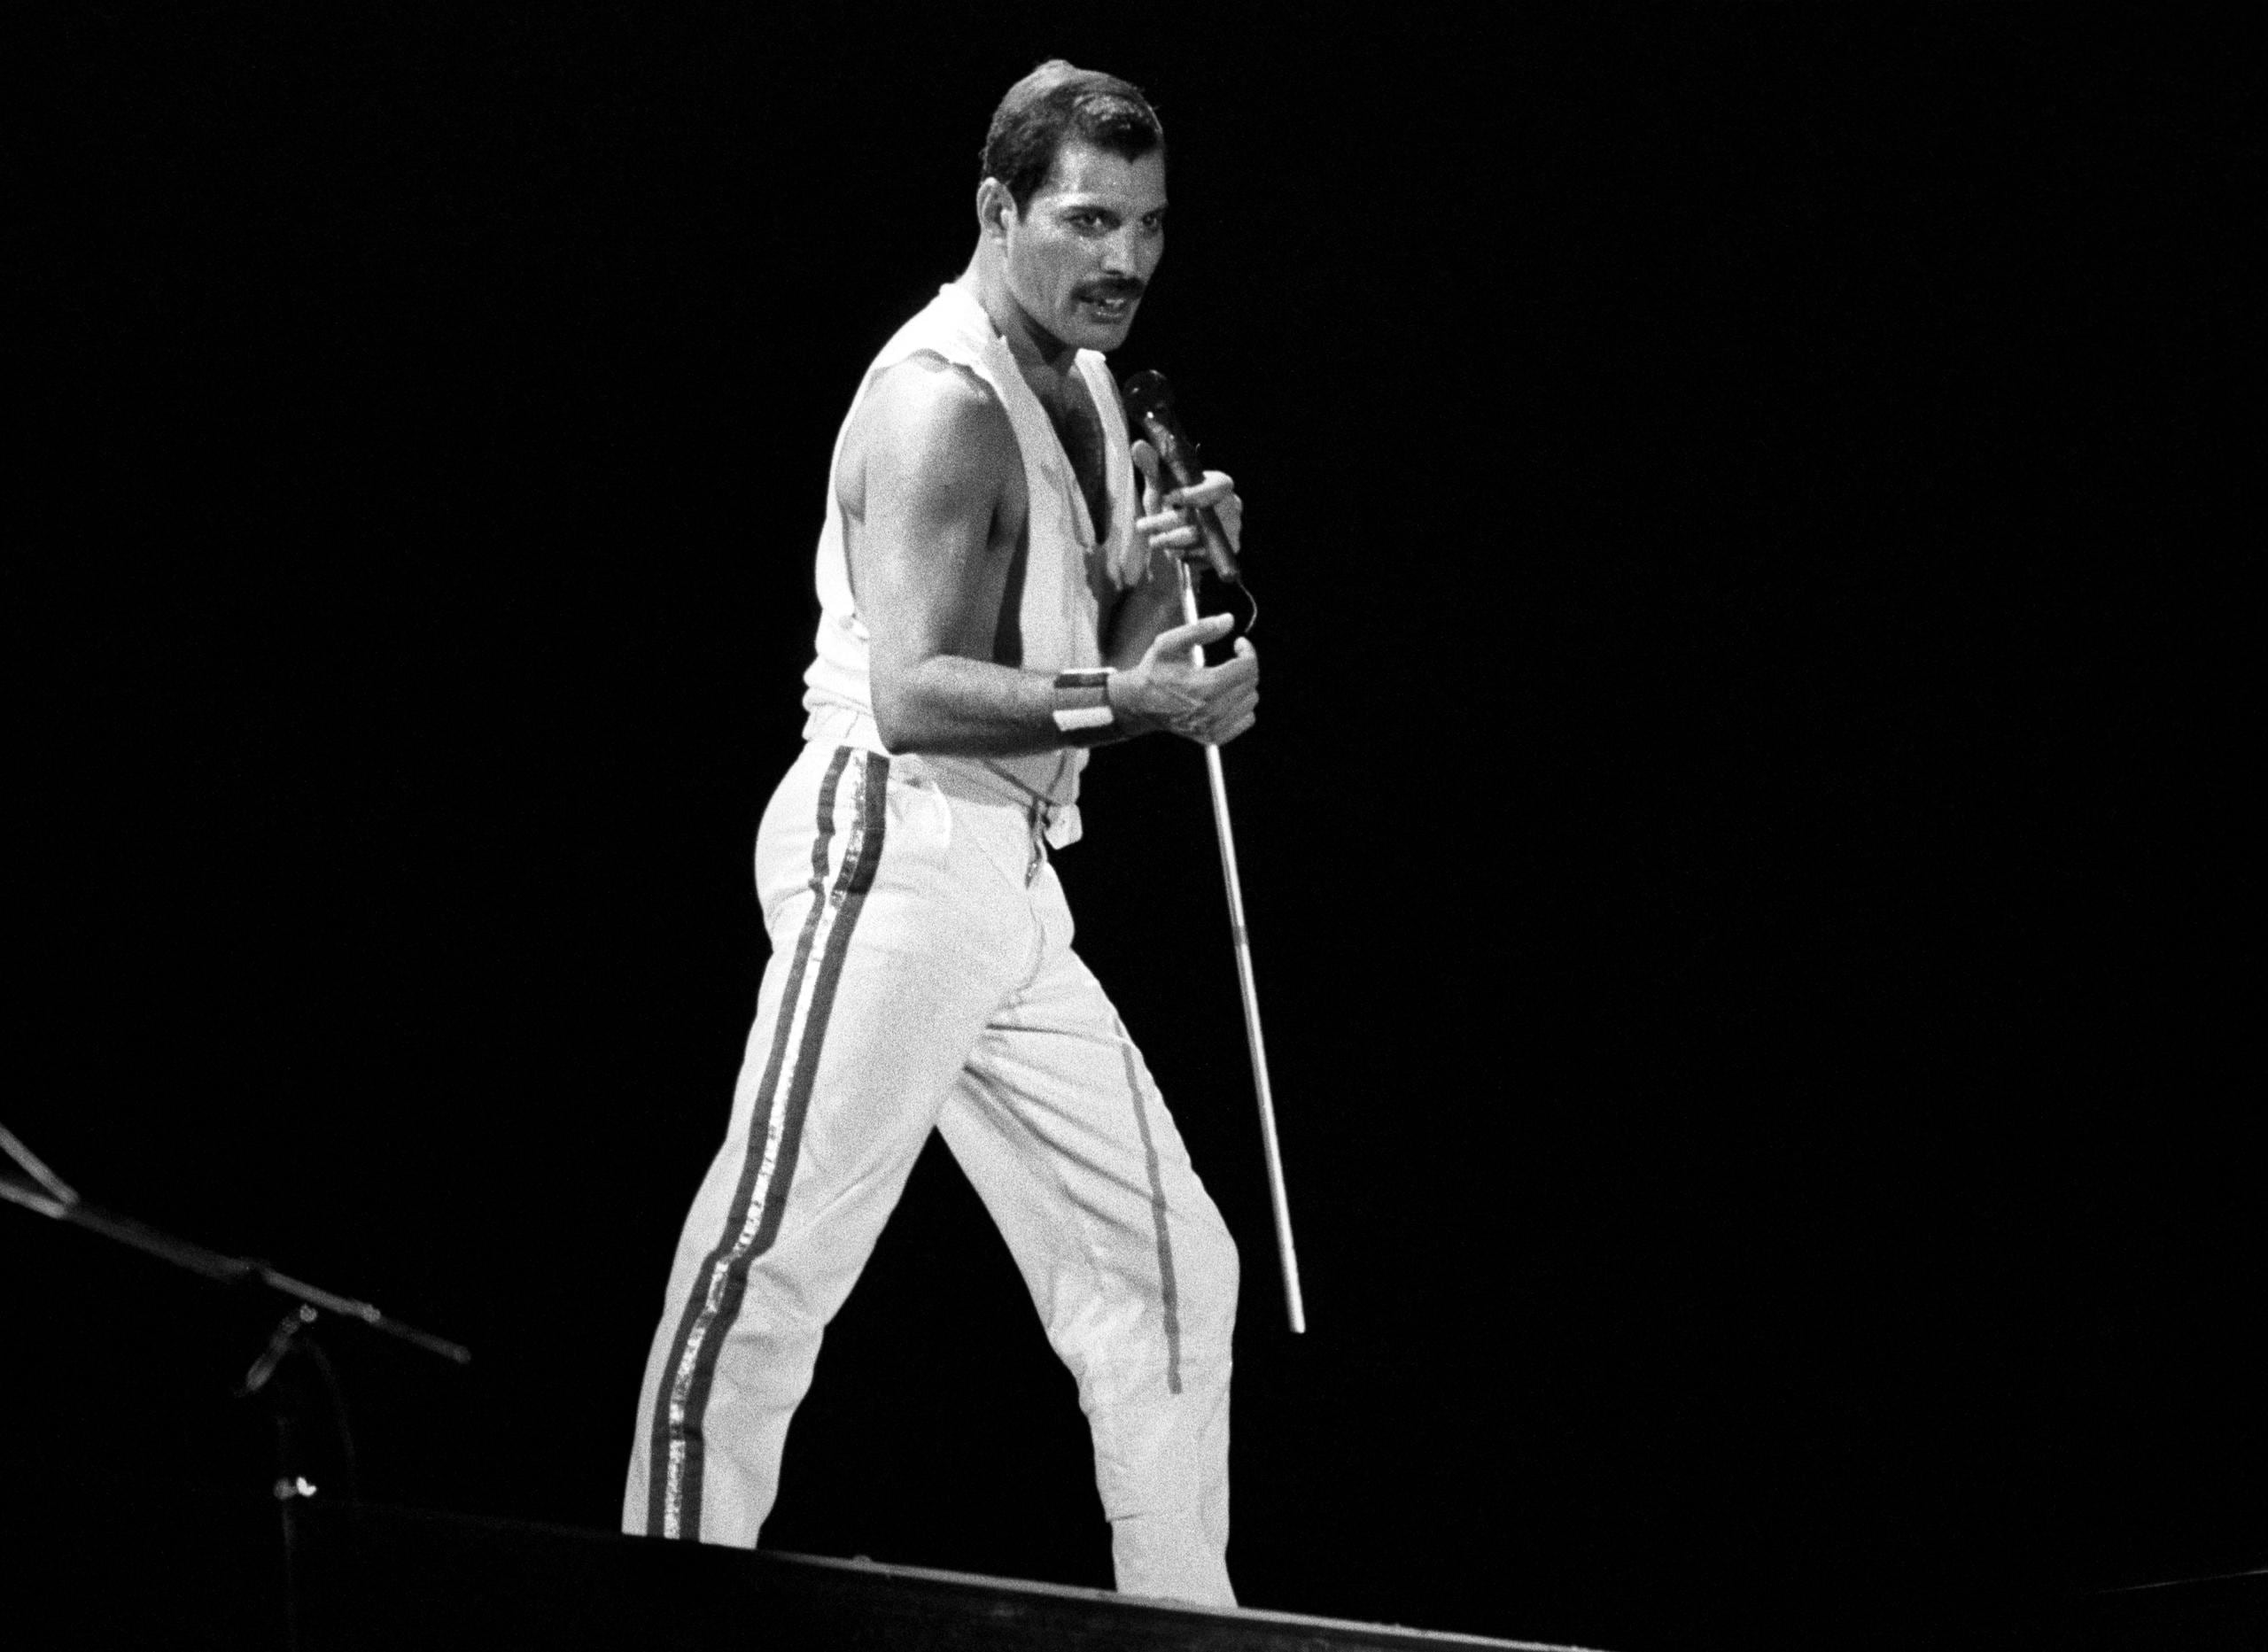 Foto de archivo del cantante británico Freddie Mercury, líder del grupo musical "Queen".